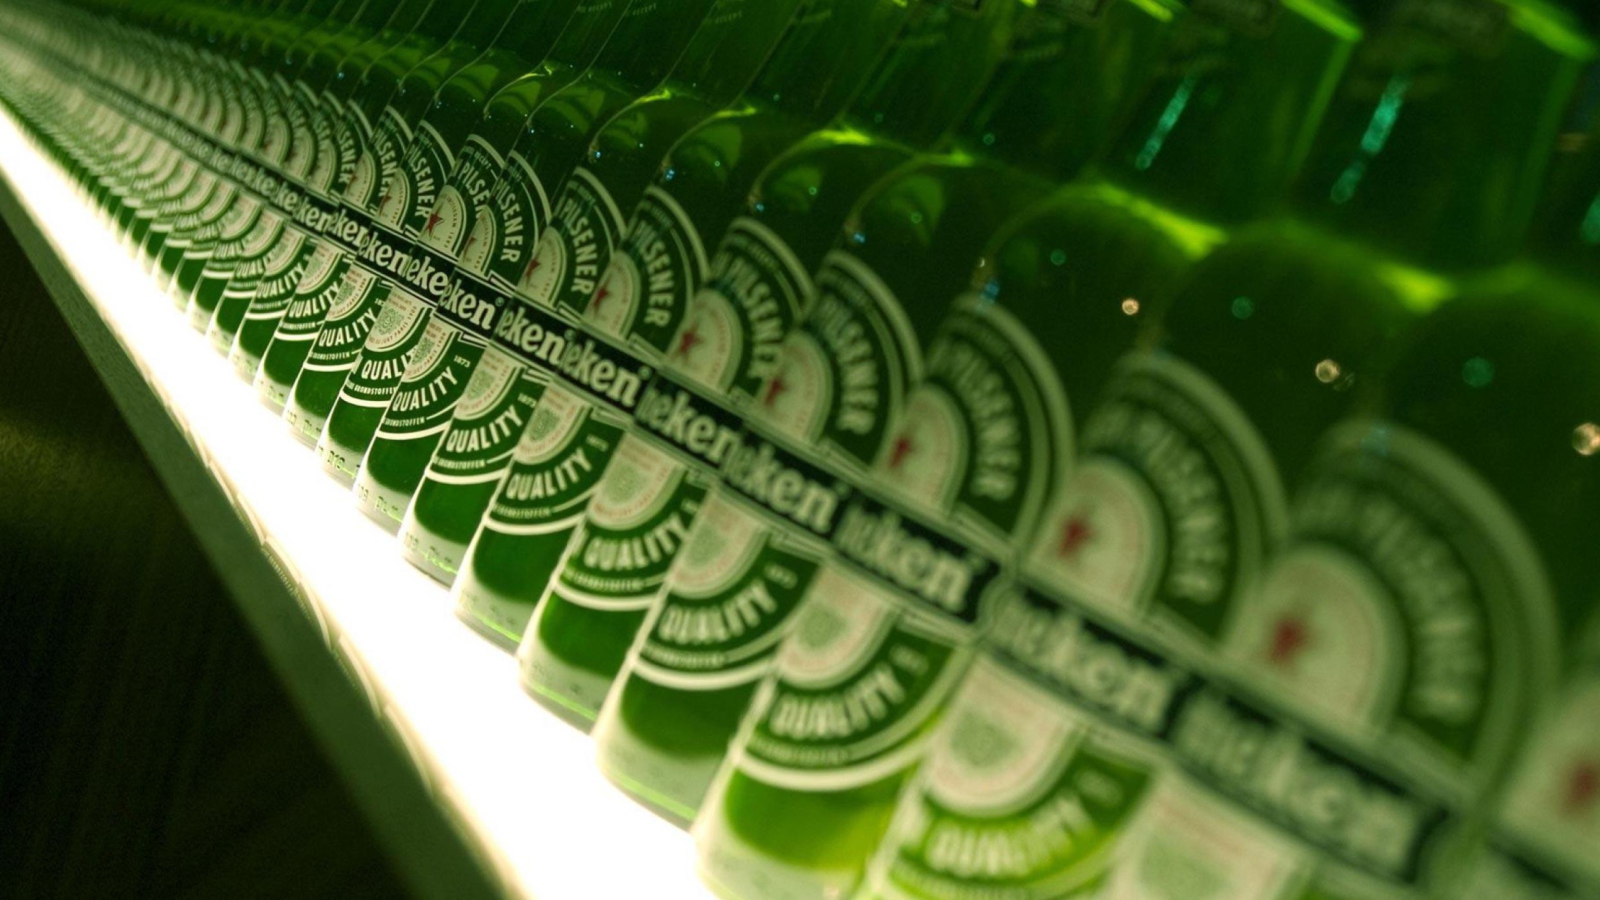 Heineken Beer wallpaper 1600x900